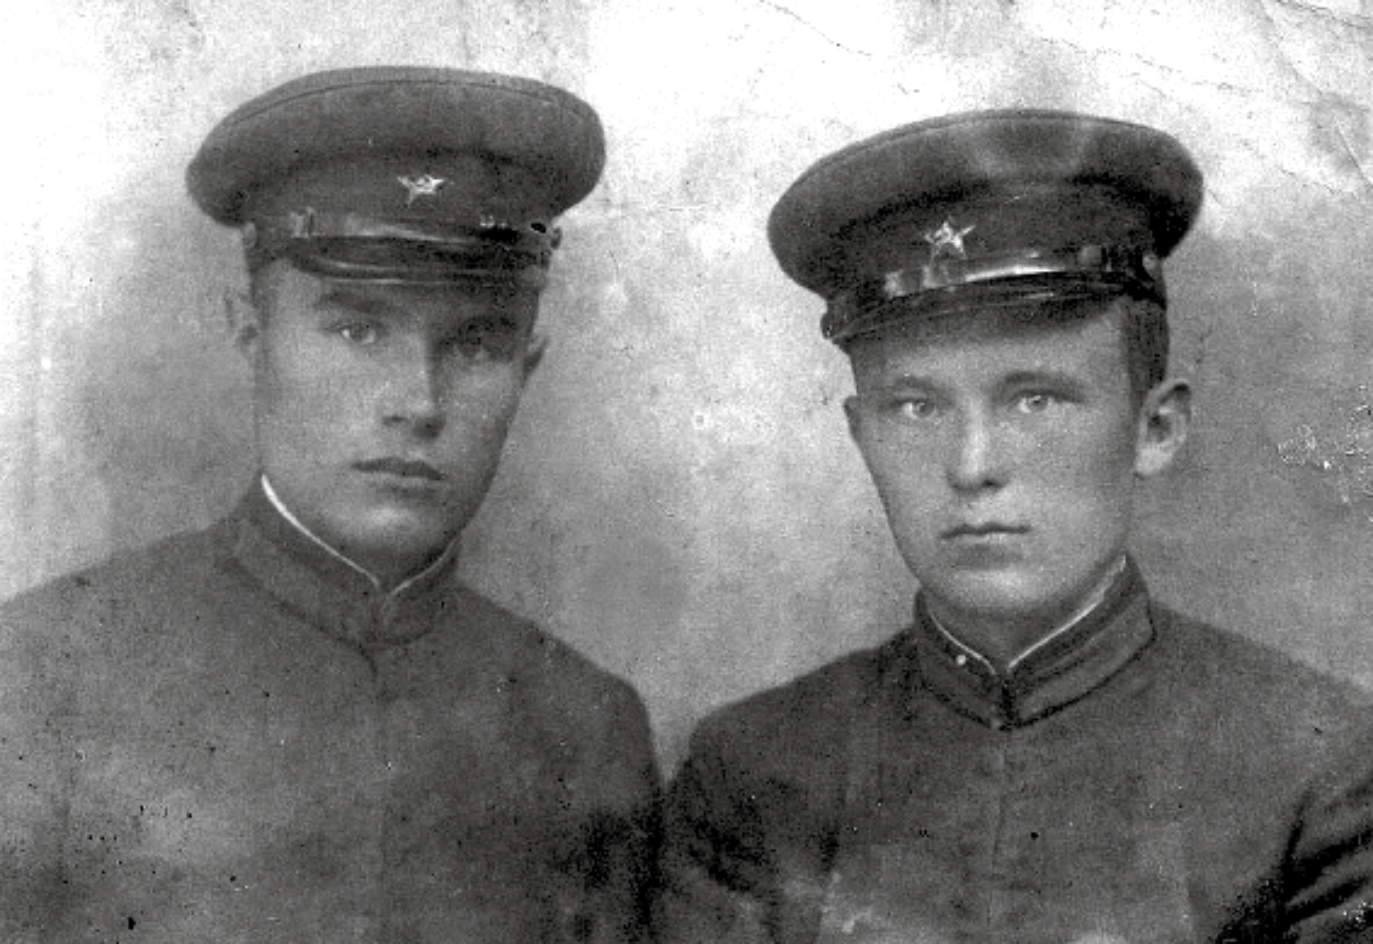 Schwarz-Weiß-Foto von Lewschenkow und einem weiteren Soldaten